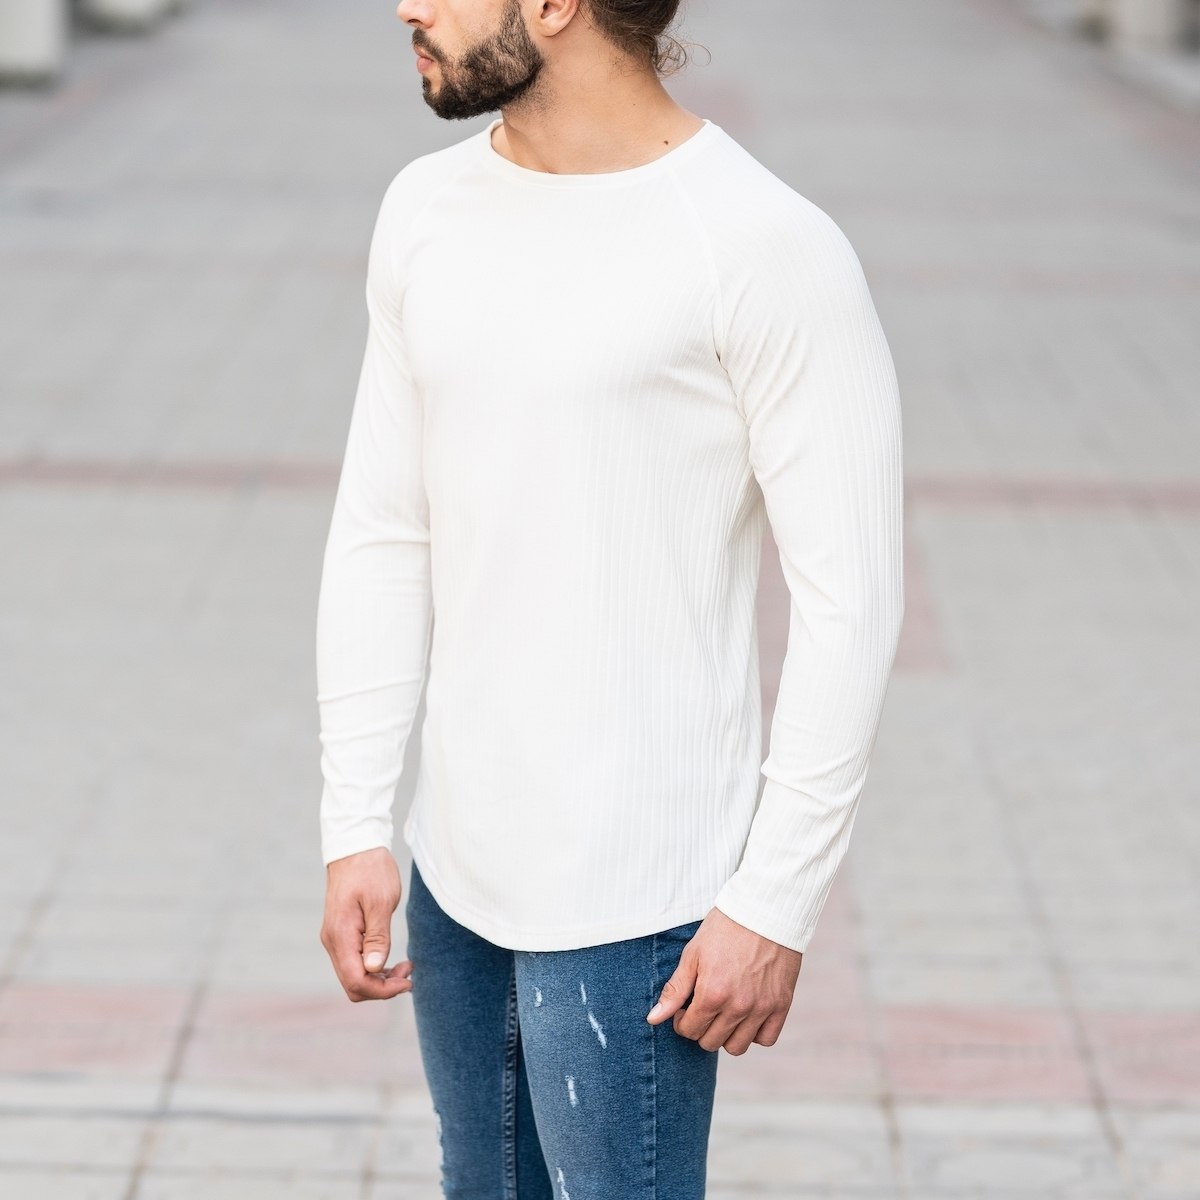 Herren Sweatshirt mit Streifenmuster in weiß - 3